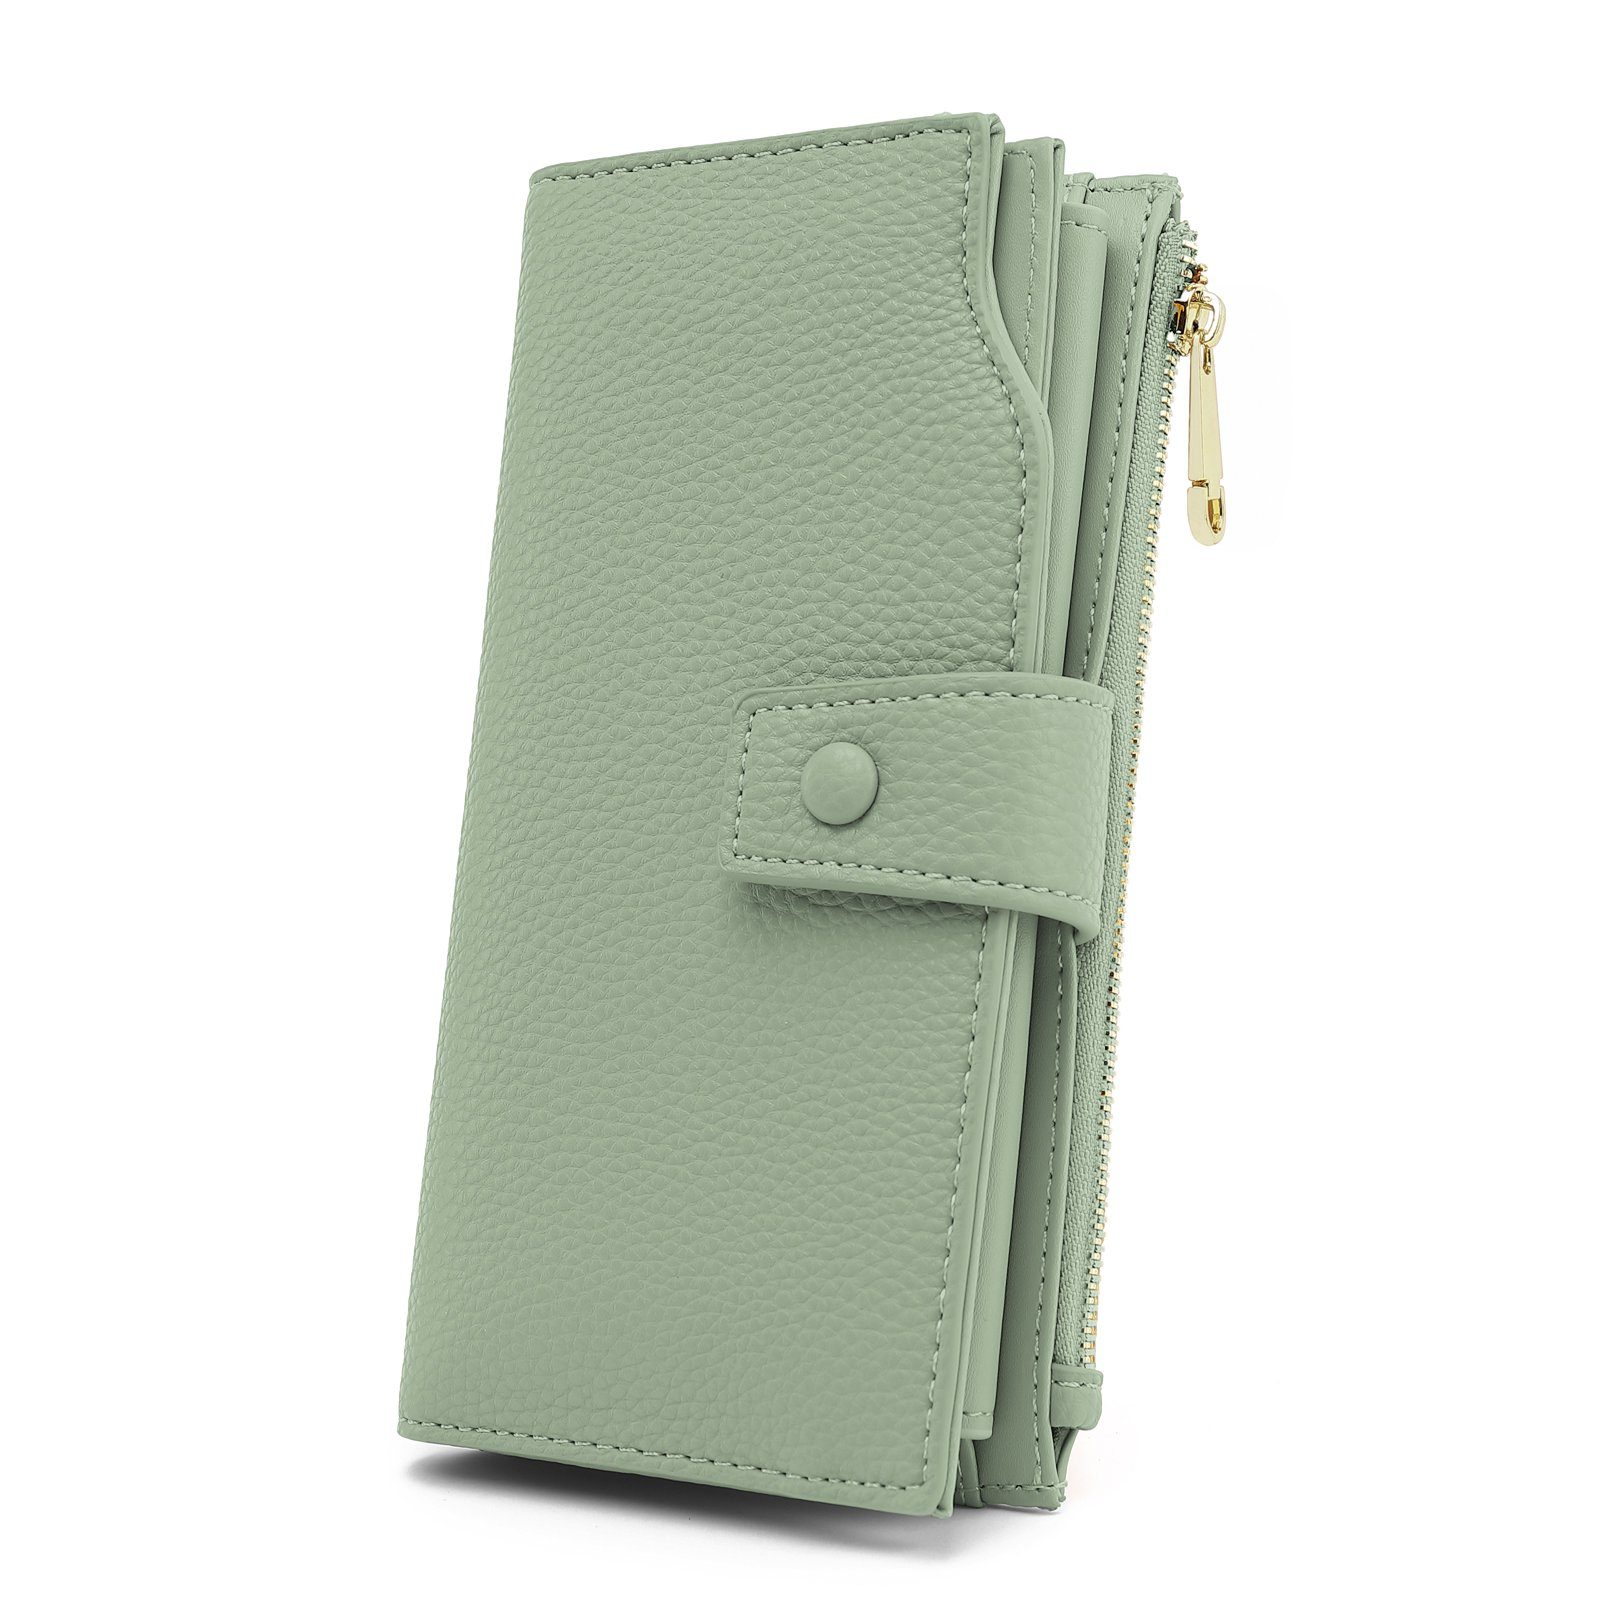 TAN.TOMI Brieftasche Portemonnaie Damen, Geldbörse für Frauen mit Lanyard (Brieftasche), Geldbörse aus hochwertigem Kunstleder Mint